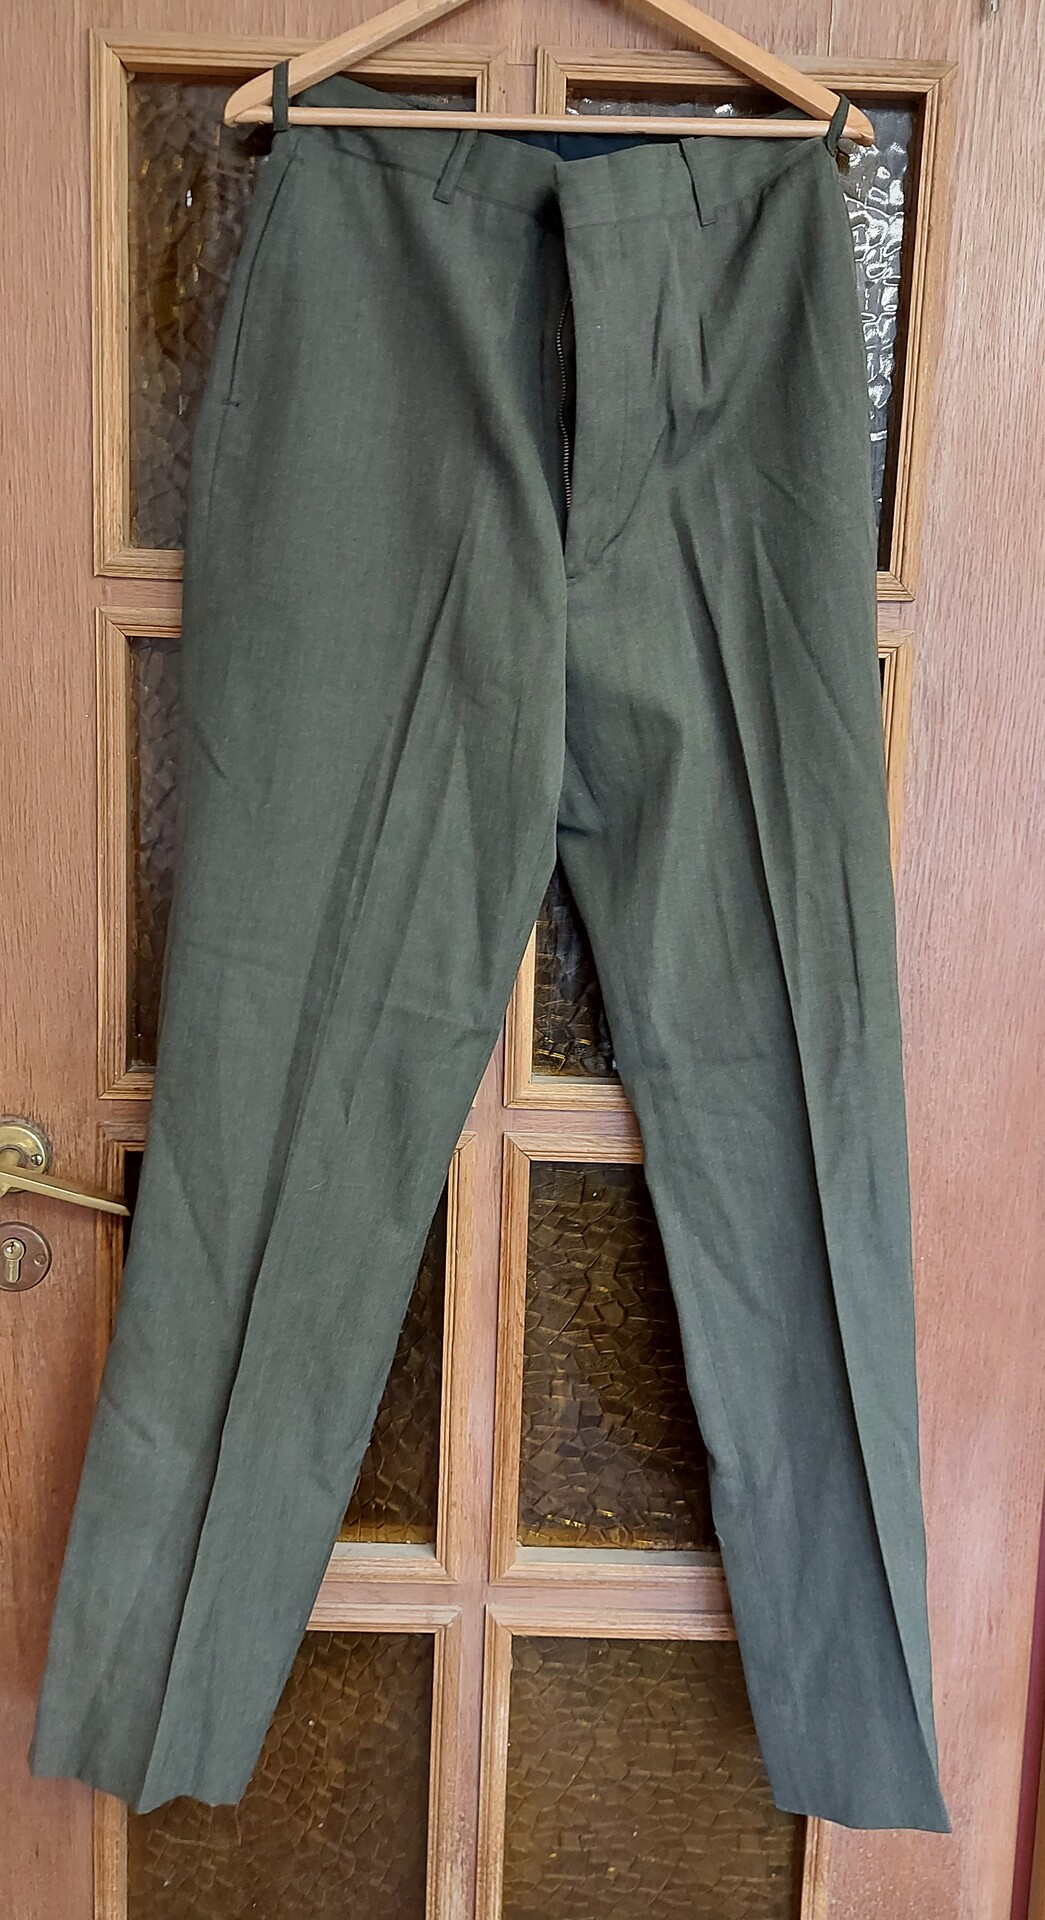 Spodnie Munduru wyjsciowego USMC - Zielone - 34R